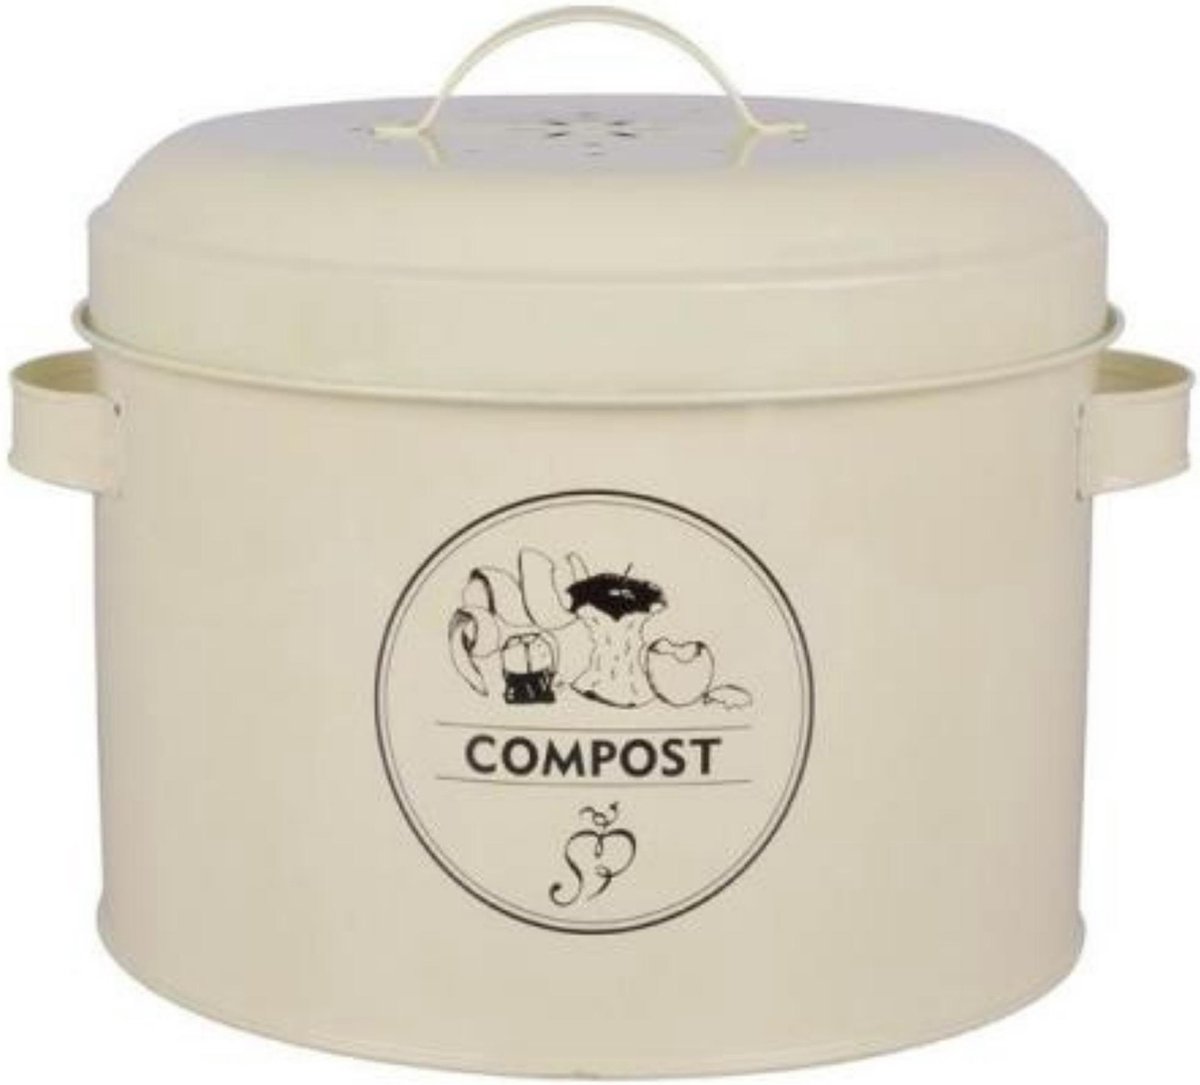 Retro Compostemmer - Compostbakje Keukenaanrecht - GFT Afvalbakje met Anti-geurfilter - 6,3 liter